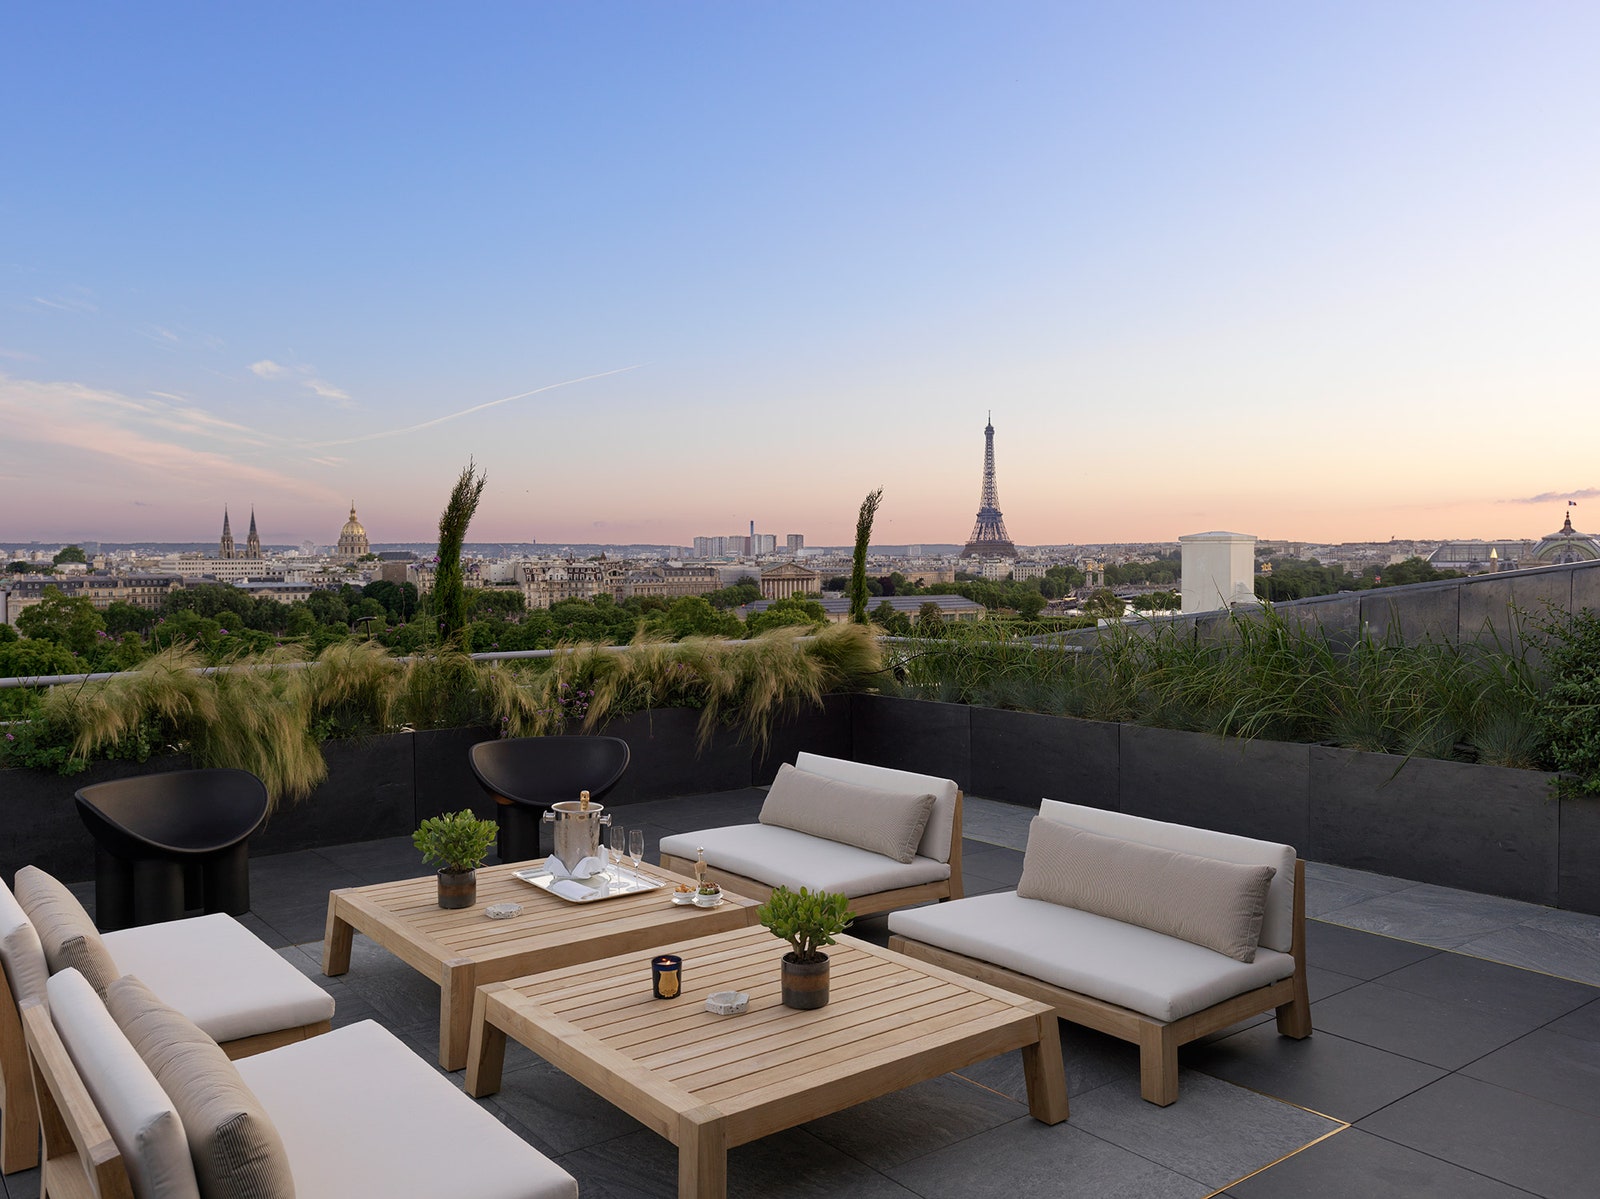 Обновленный интерьер пентхауса на крыше парижского отеля Le Meurice